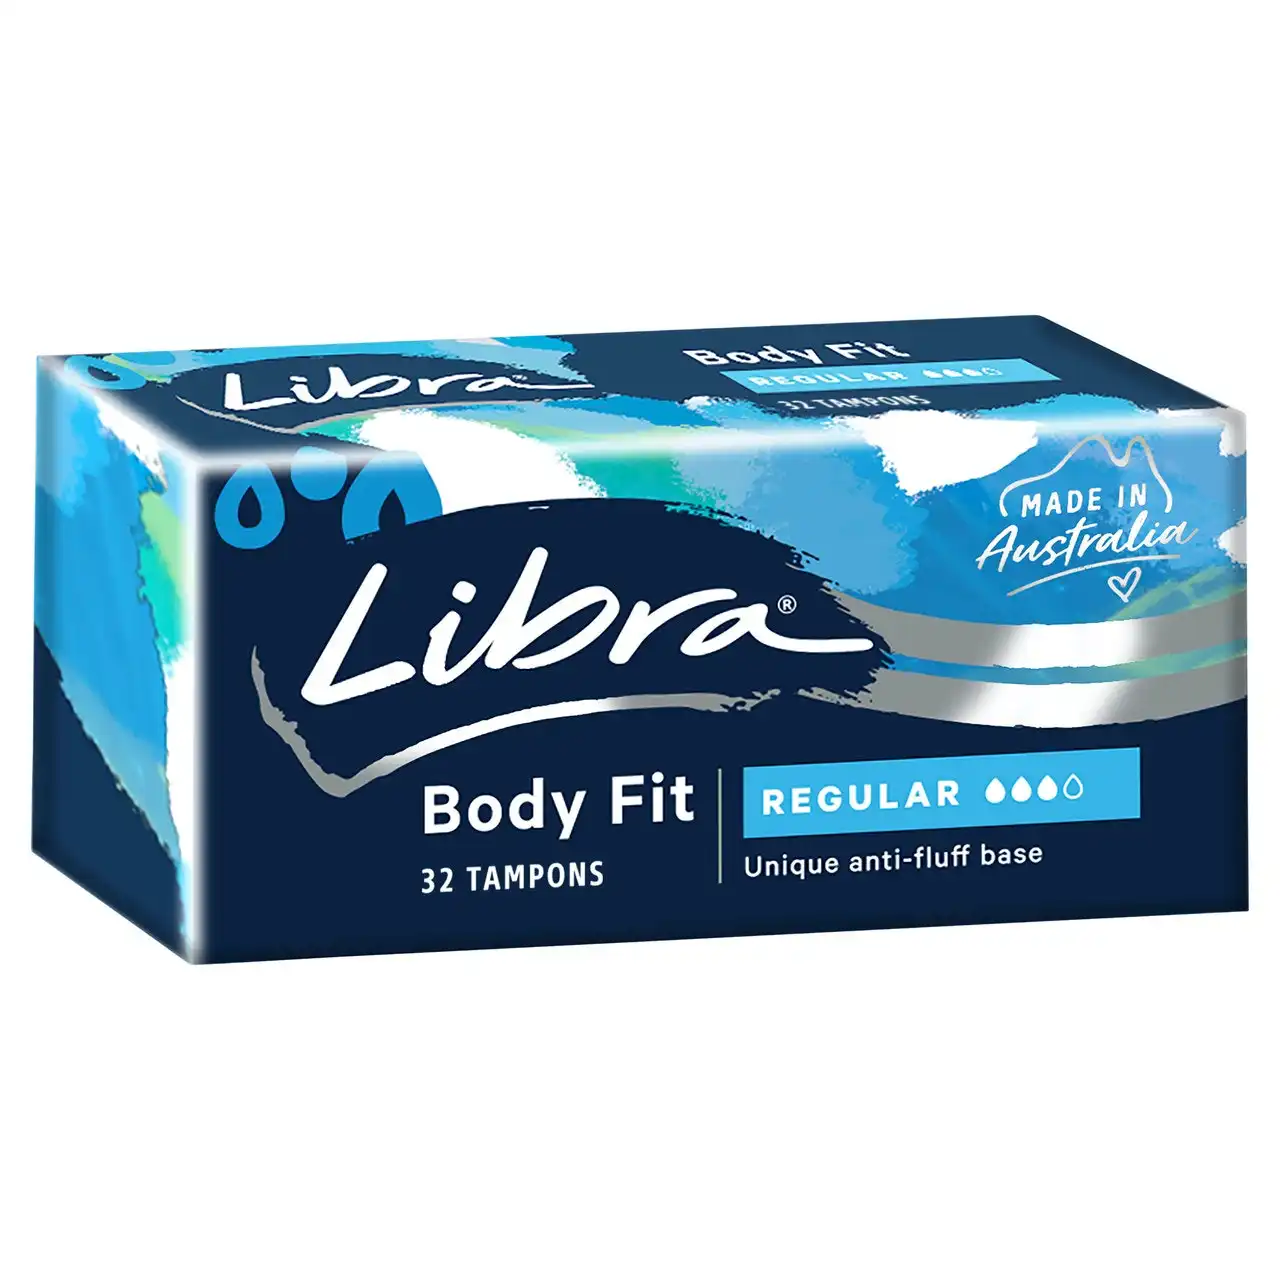 Libra Body Fit Regular Tampons 32 pack